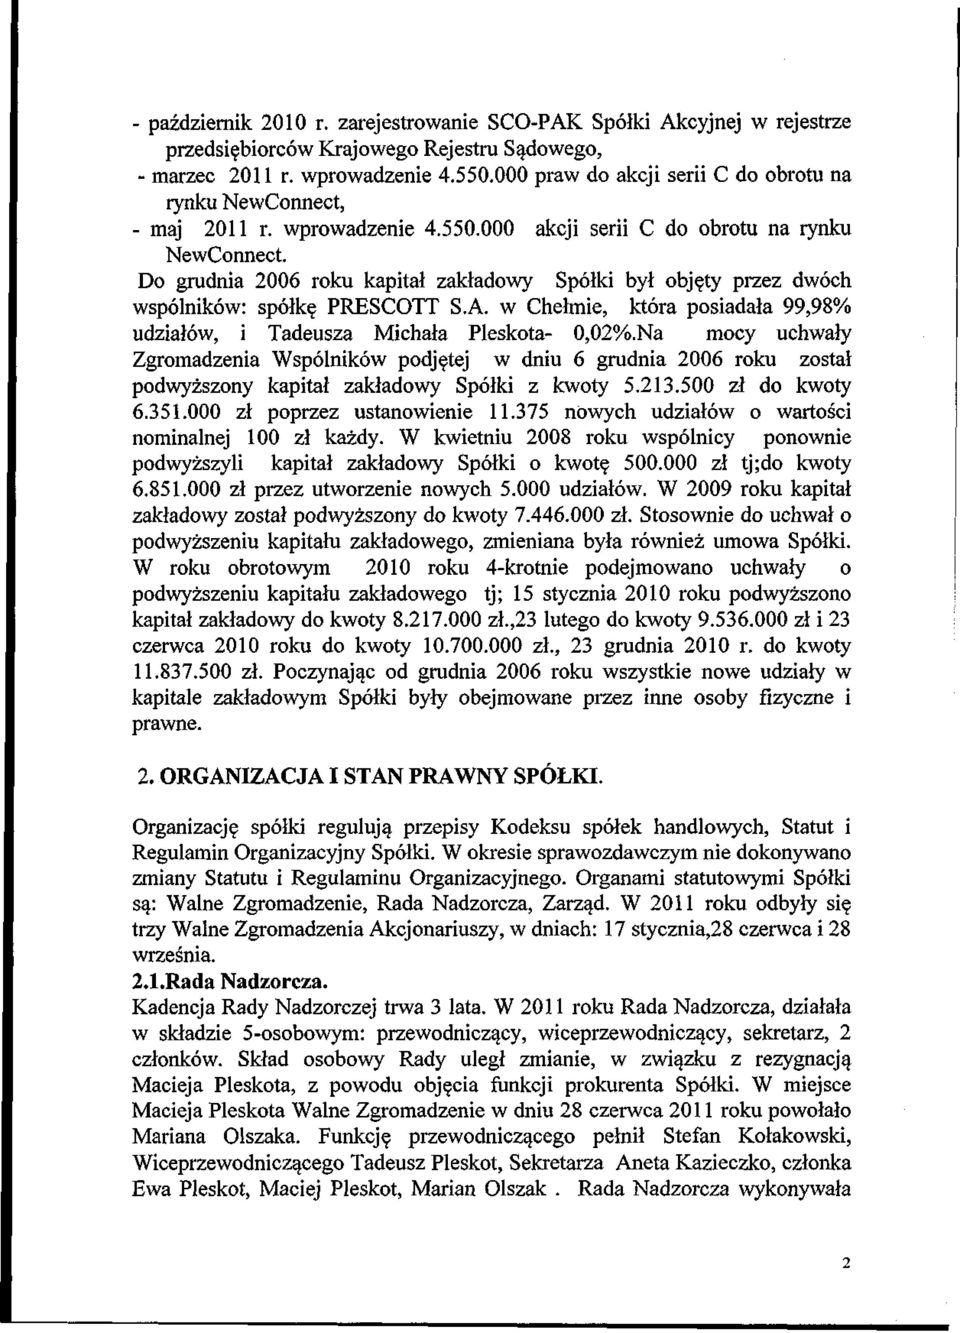 Do grudnia 2006 roku kapital zakladowy Sp61ki byl objety przez dw6ch wsp61nik6w: sp61ke. PRESCOTT S.A. w Chelmie, kt6ra posiadala 99,98% udzial6w, i Tadeusza Michala Pleskota- 0,02%.